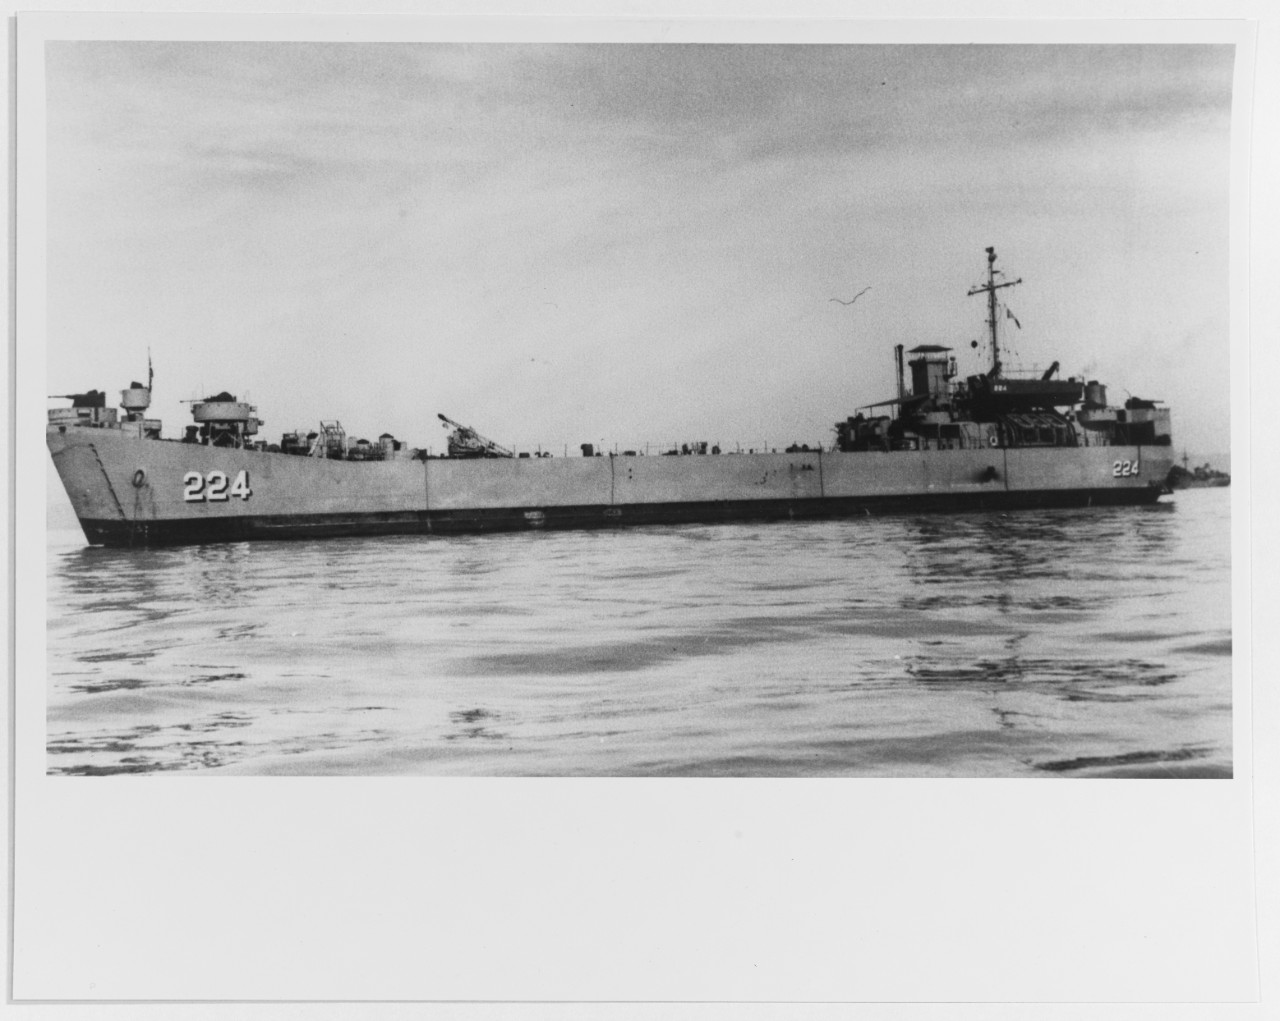 USS LST-224